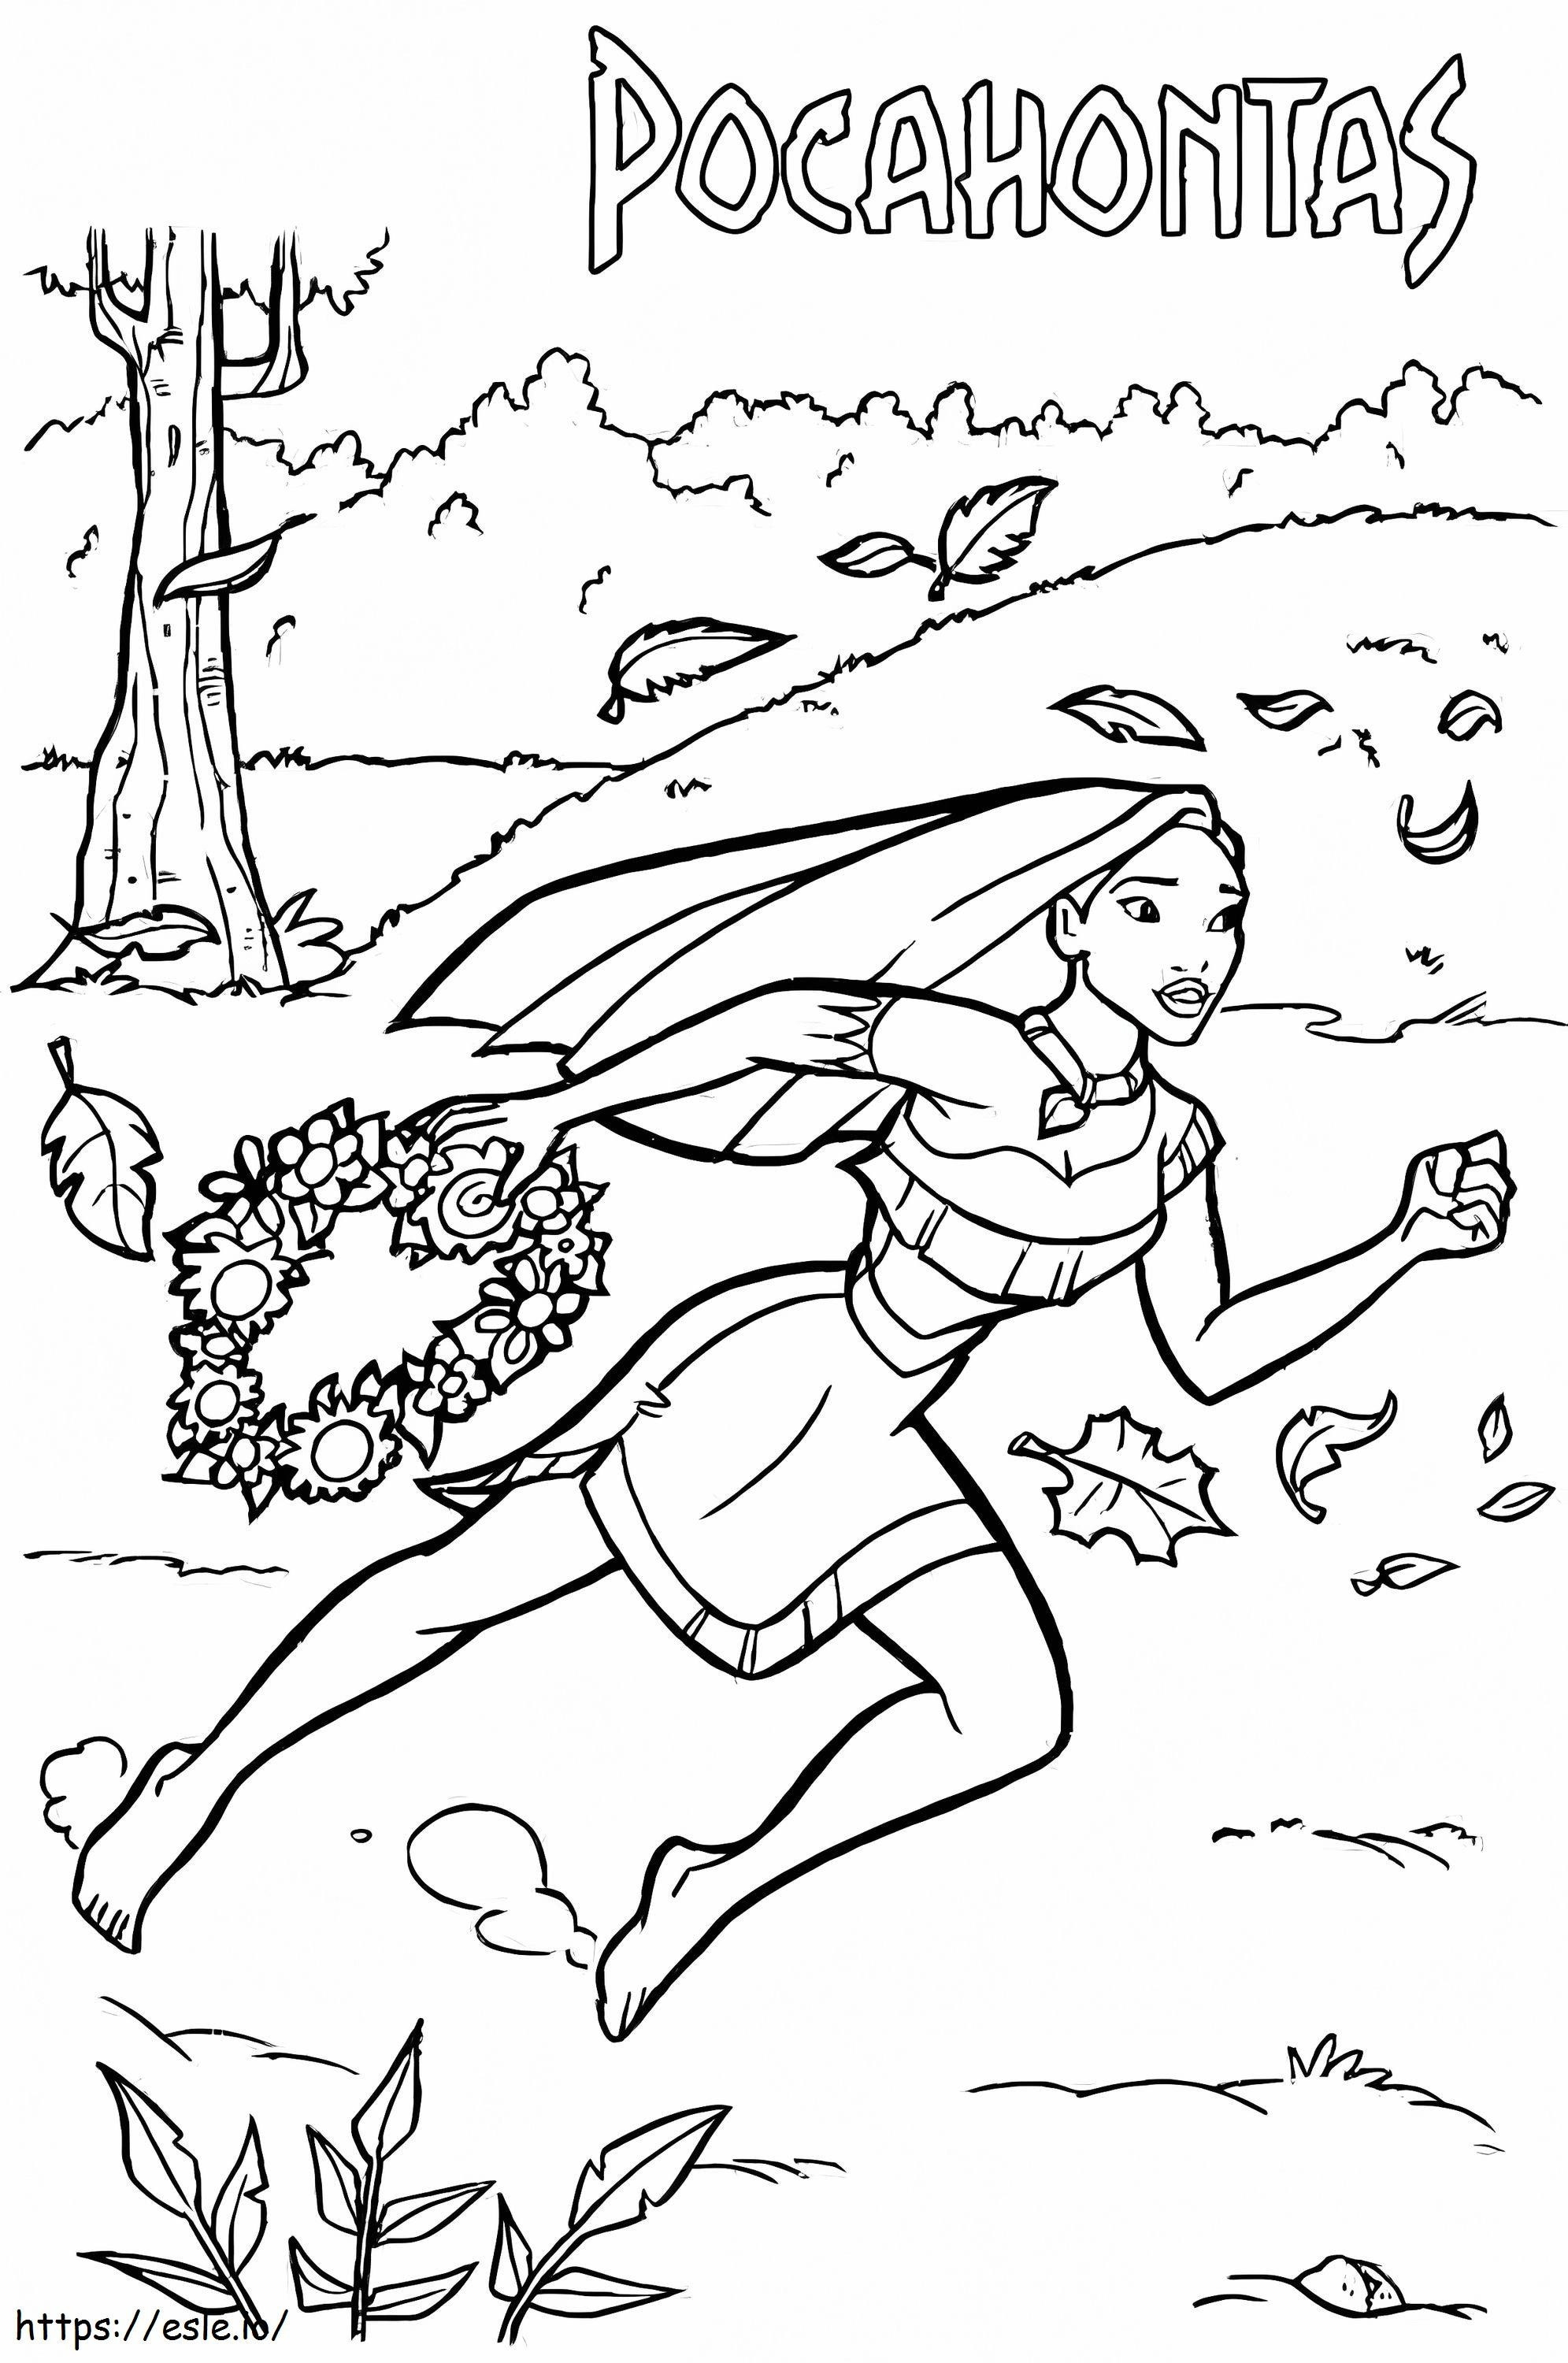 Pocahontas está corriendo para colorear